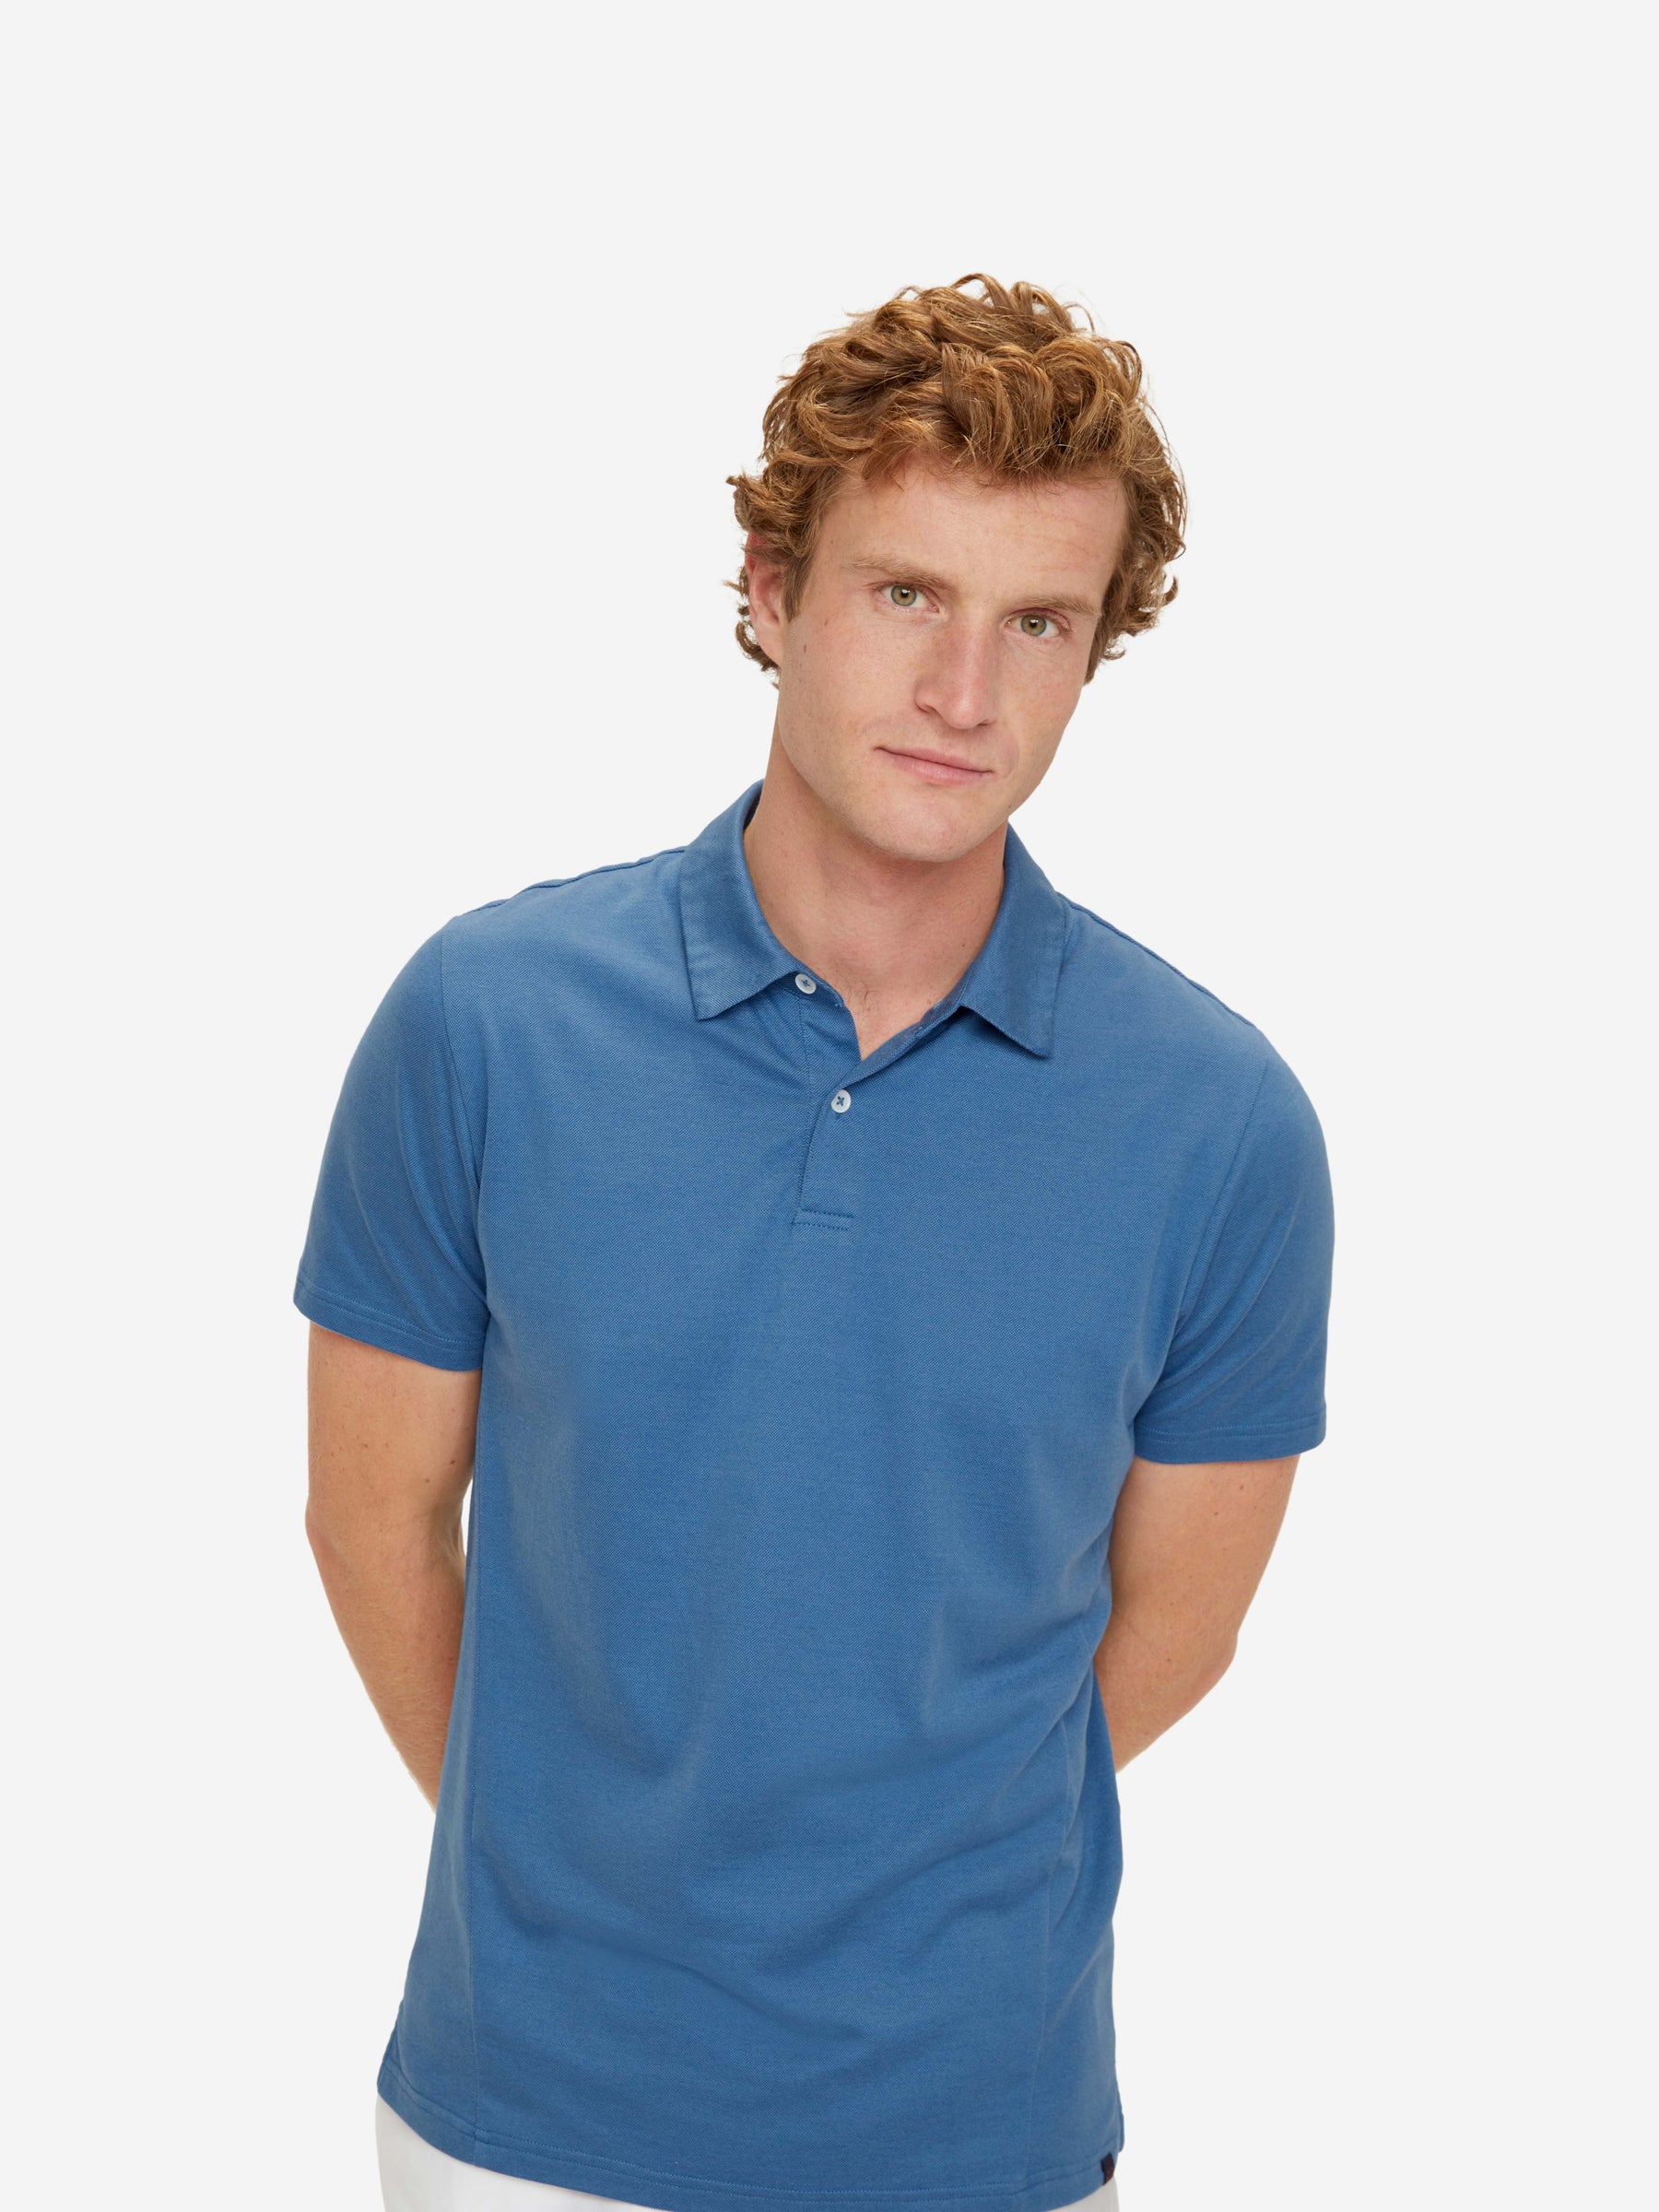 Men's Polo Shirt Ramsay 3 Pique Cotton Tencel Blue